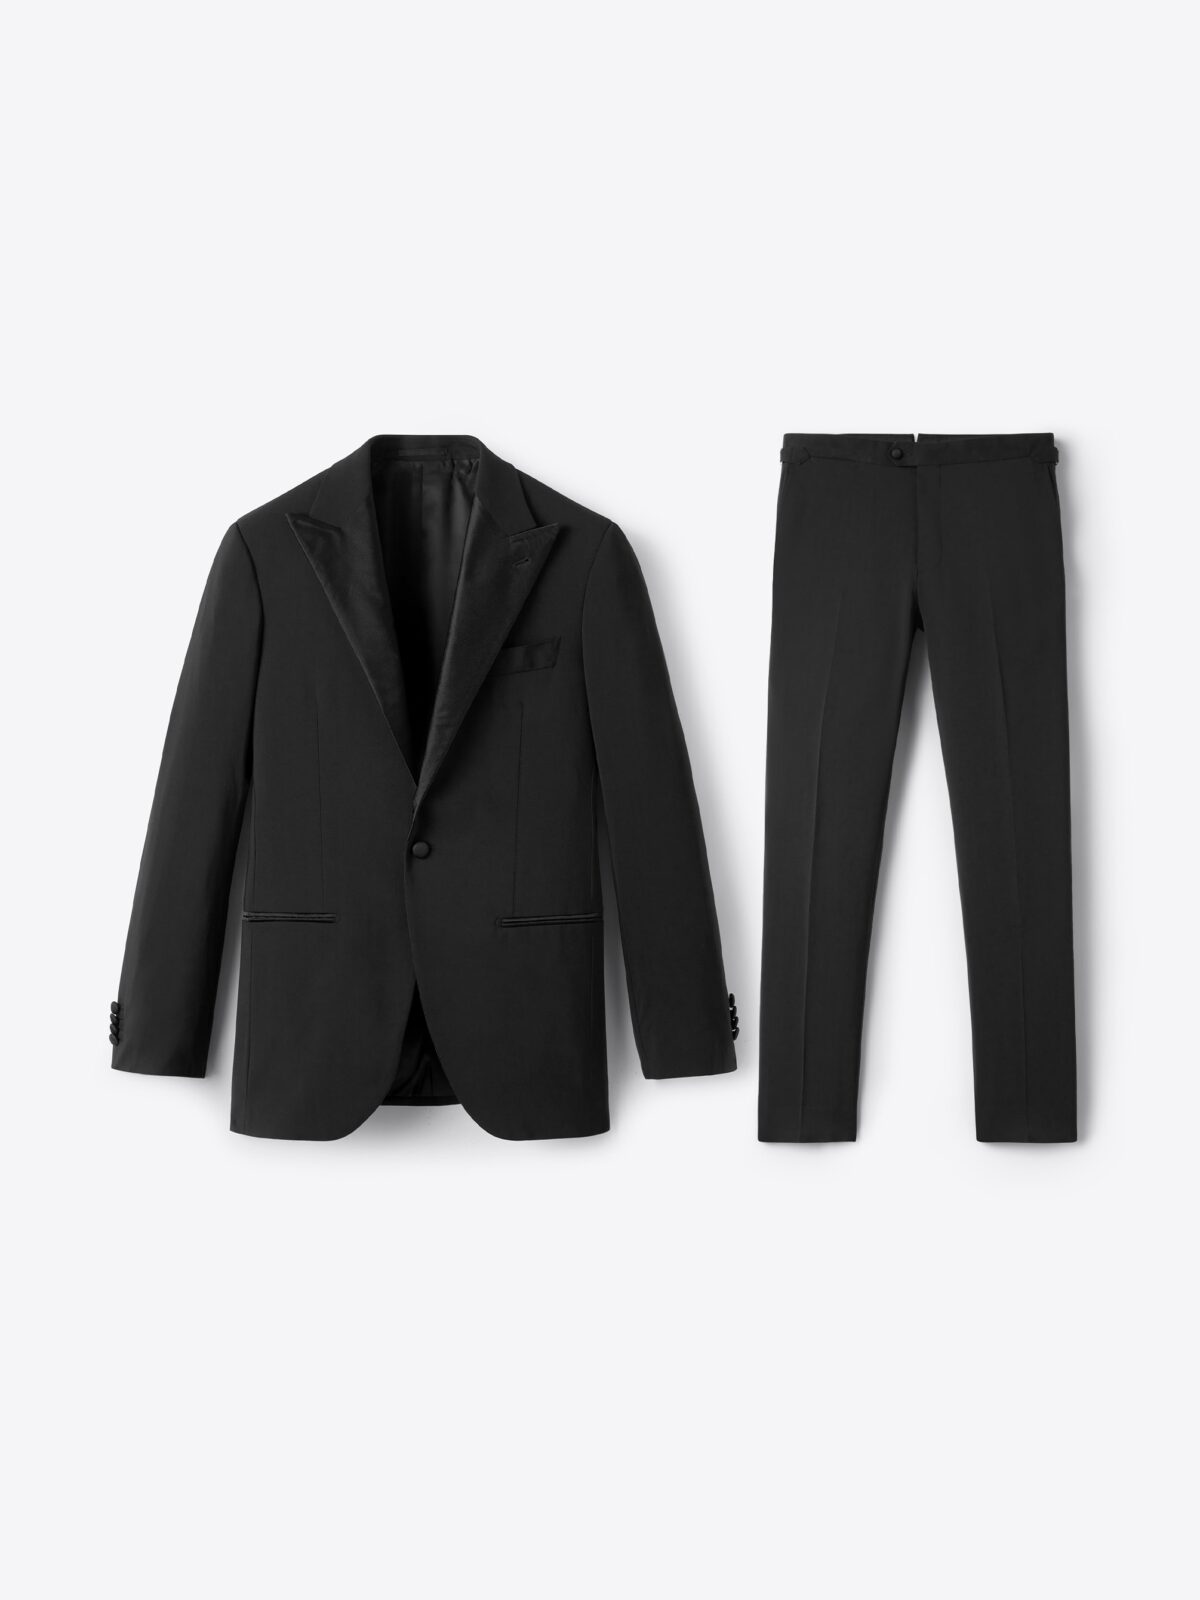 Peak Lapel Stretch Allen Tuxedo - Custom Fit Tailored Clothing